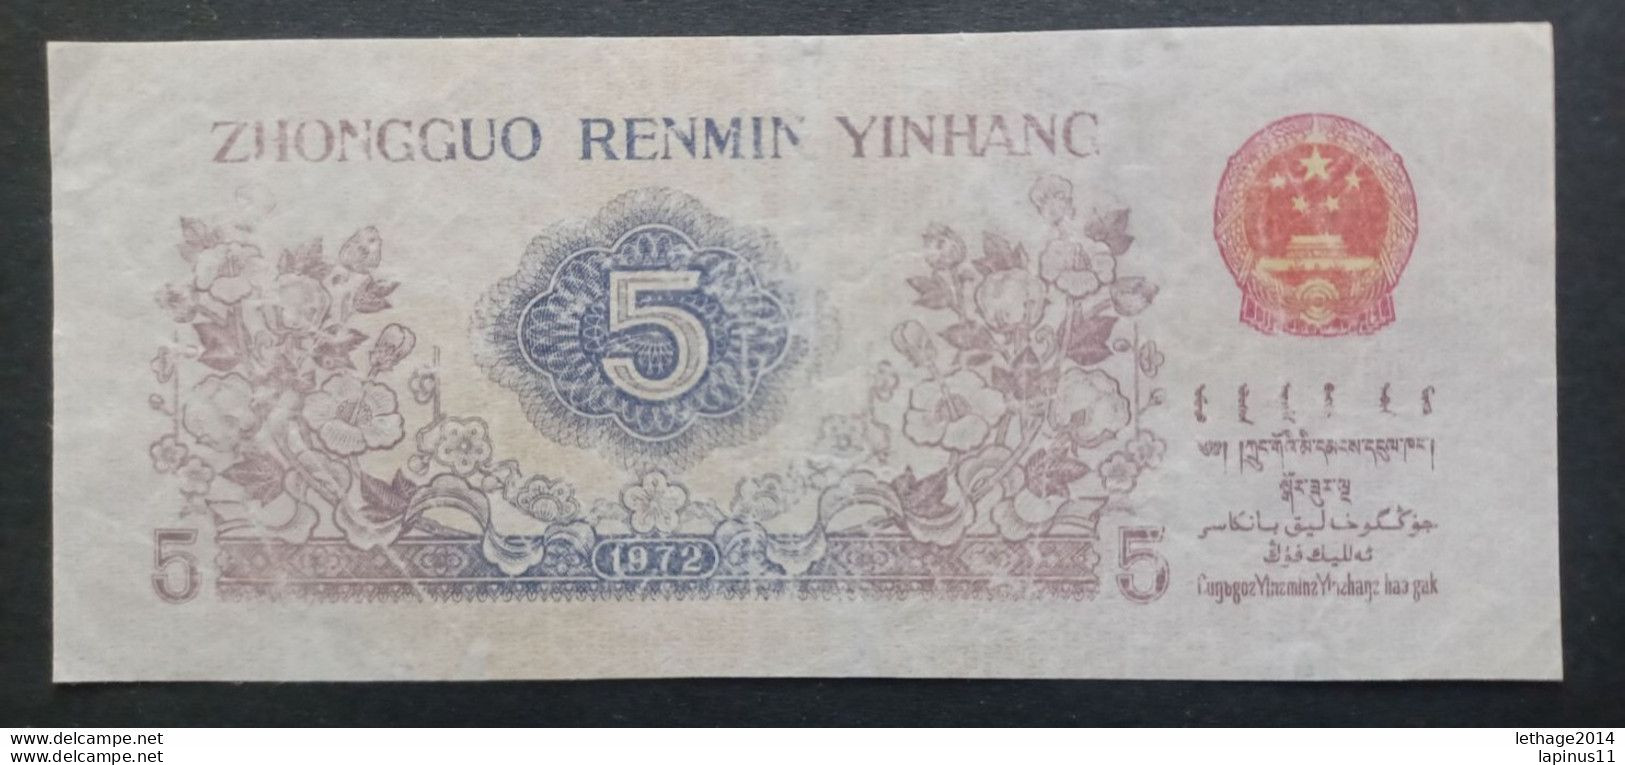 BANKNOTE CINA ZHONGGUO RENMI YINHANG 5 WU JIAO 1972 UNCIRCULATED - Chine